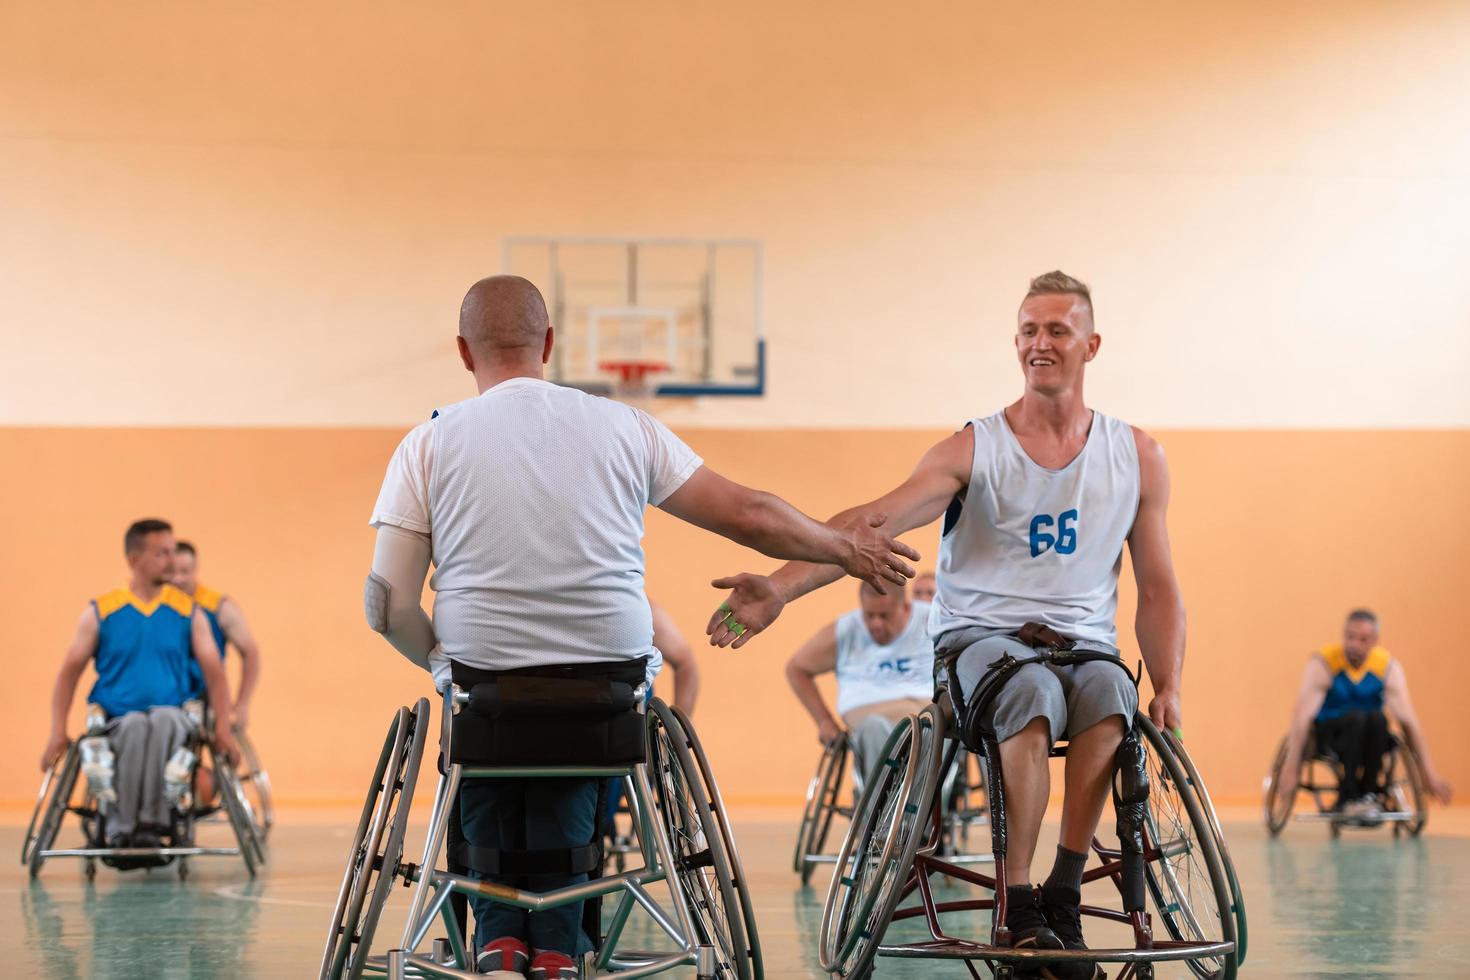 en team av krig veteraner i rullstolar spelar basketboll, fira poäng vann i en spel. hög fem begrepp foto